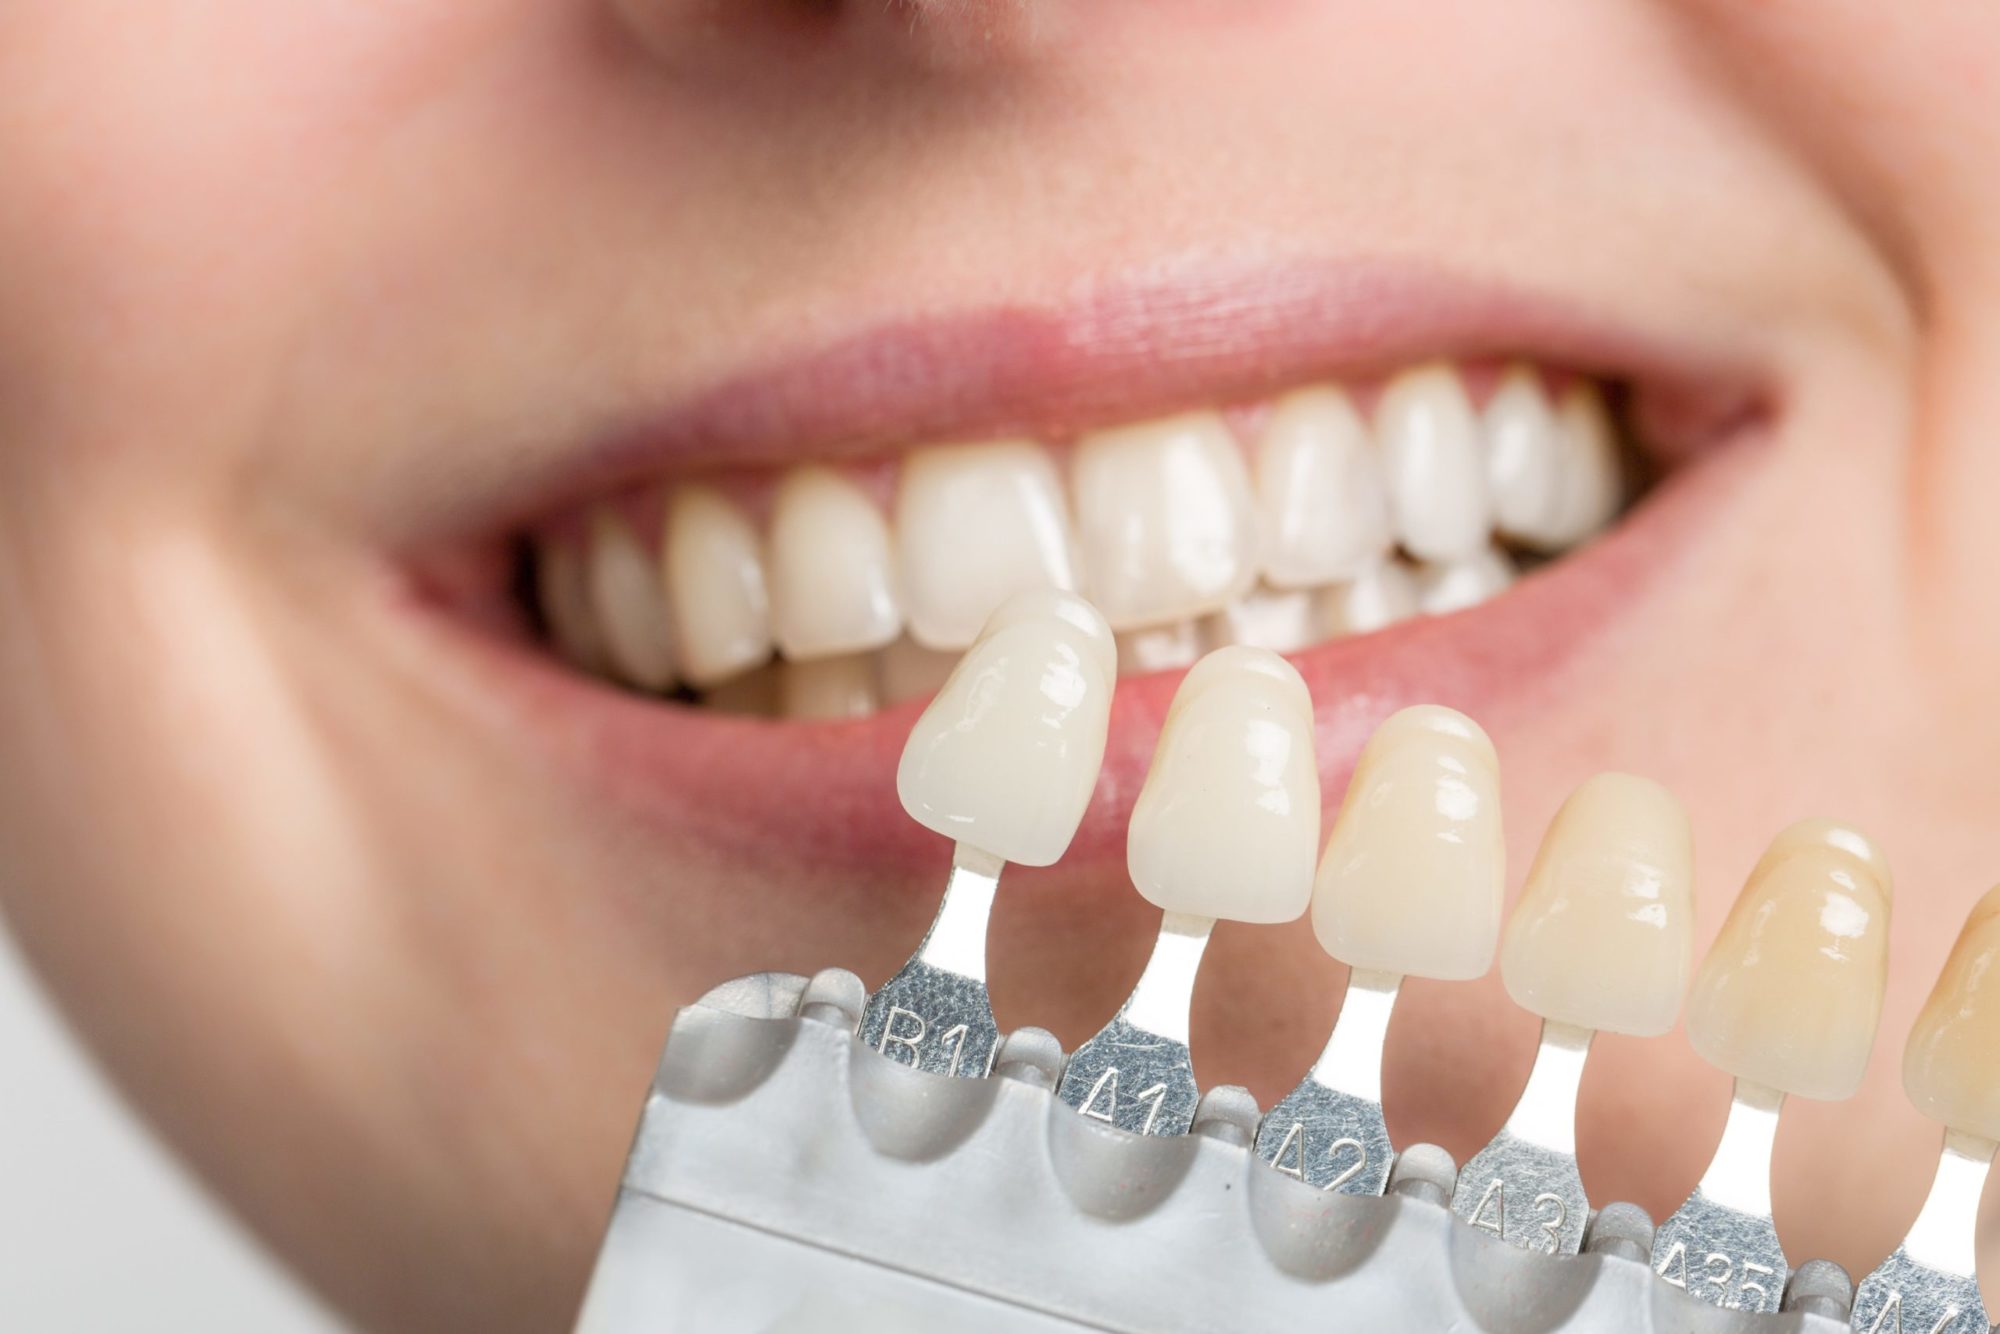 Featured image for “Dental Veneers”